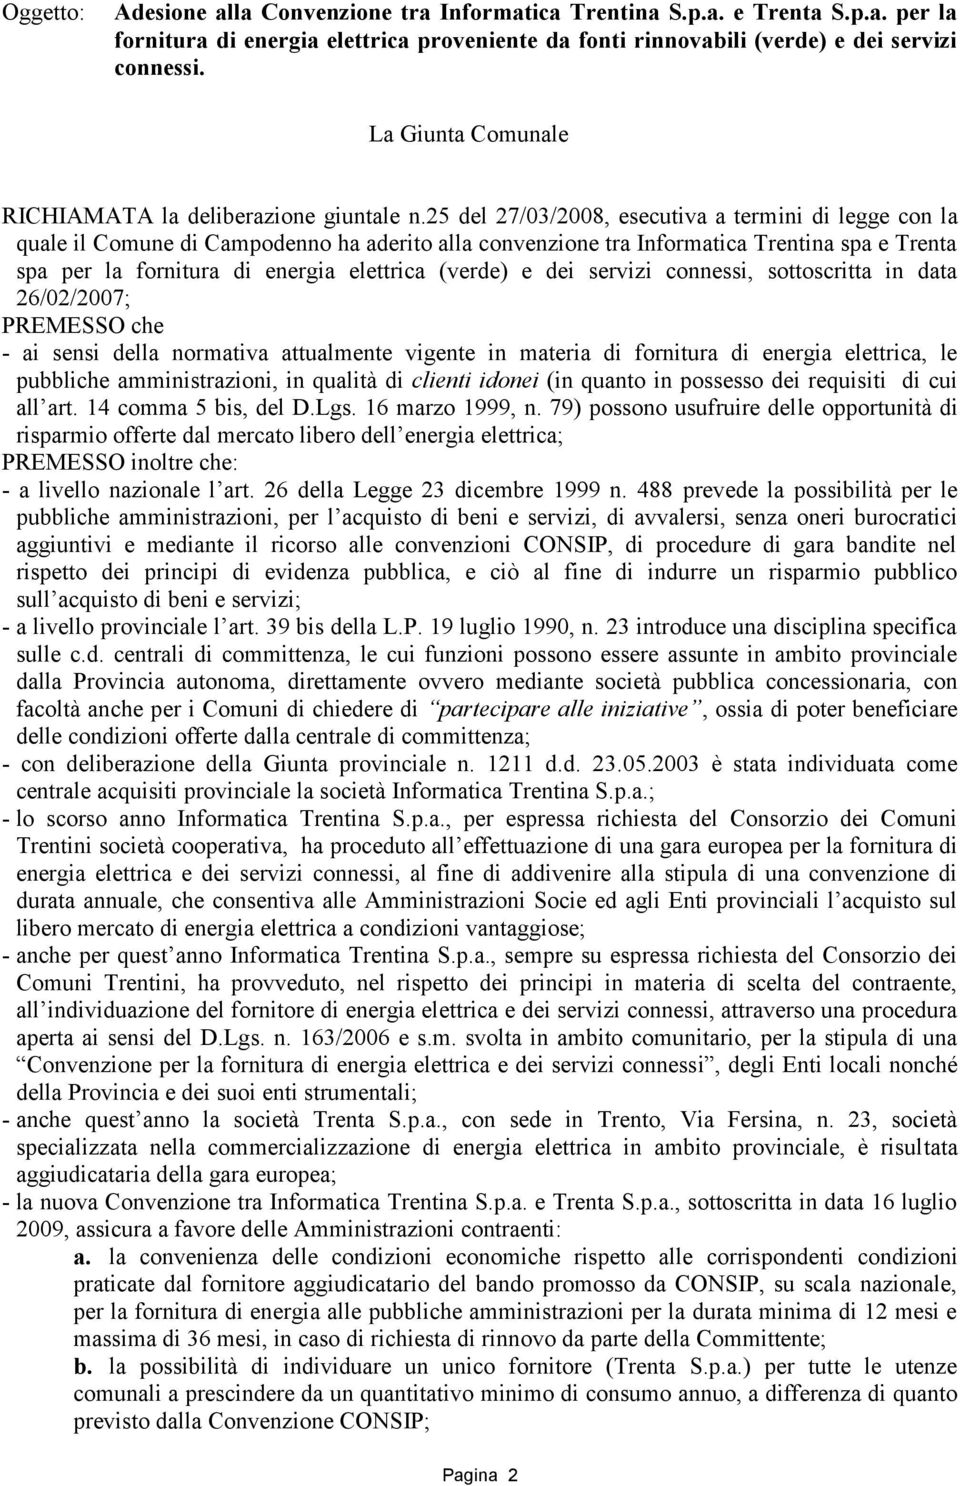 25 del 27/03/2008, esecutiva a termini di legge con la quale il Comune di Campodenno ha aderito alla convenzione tra Informatica Trentina spa e Trenta spa per la fornitura di energia elettrica